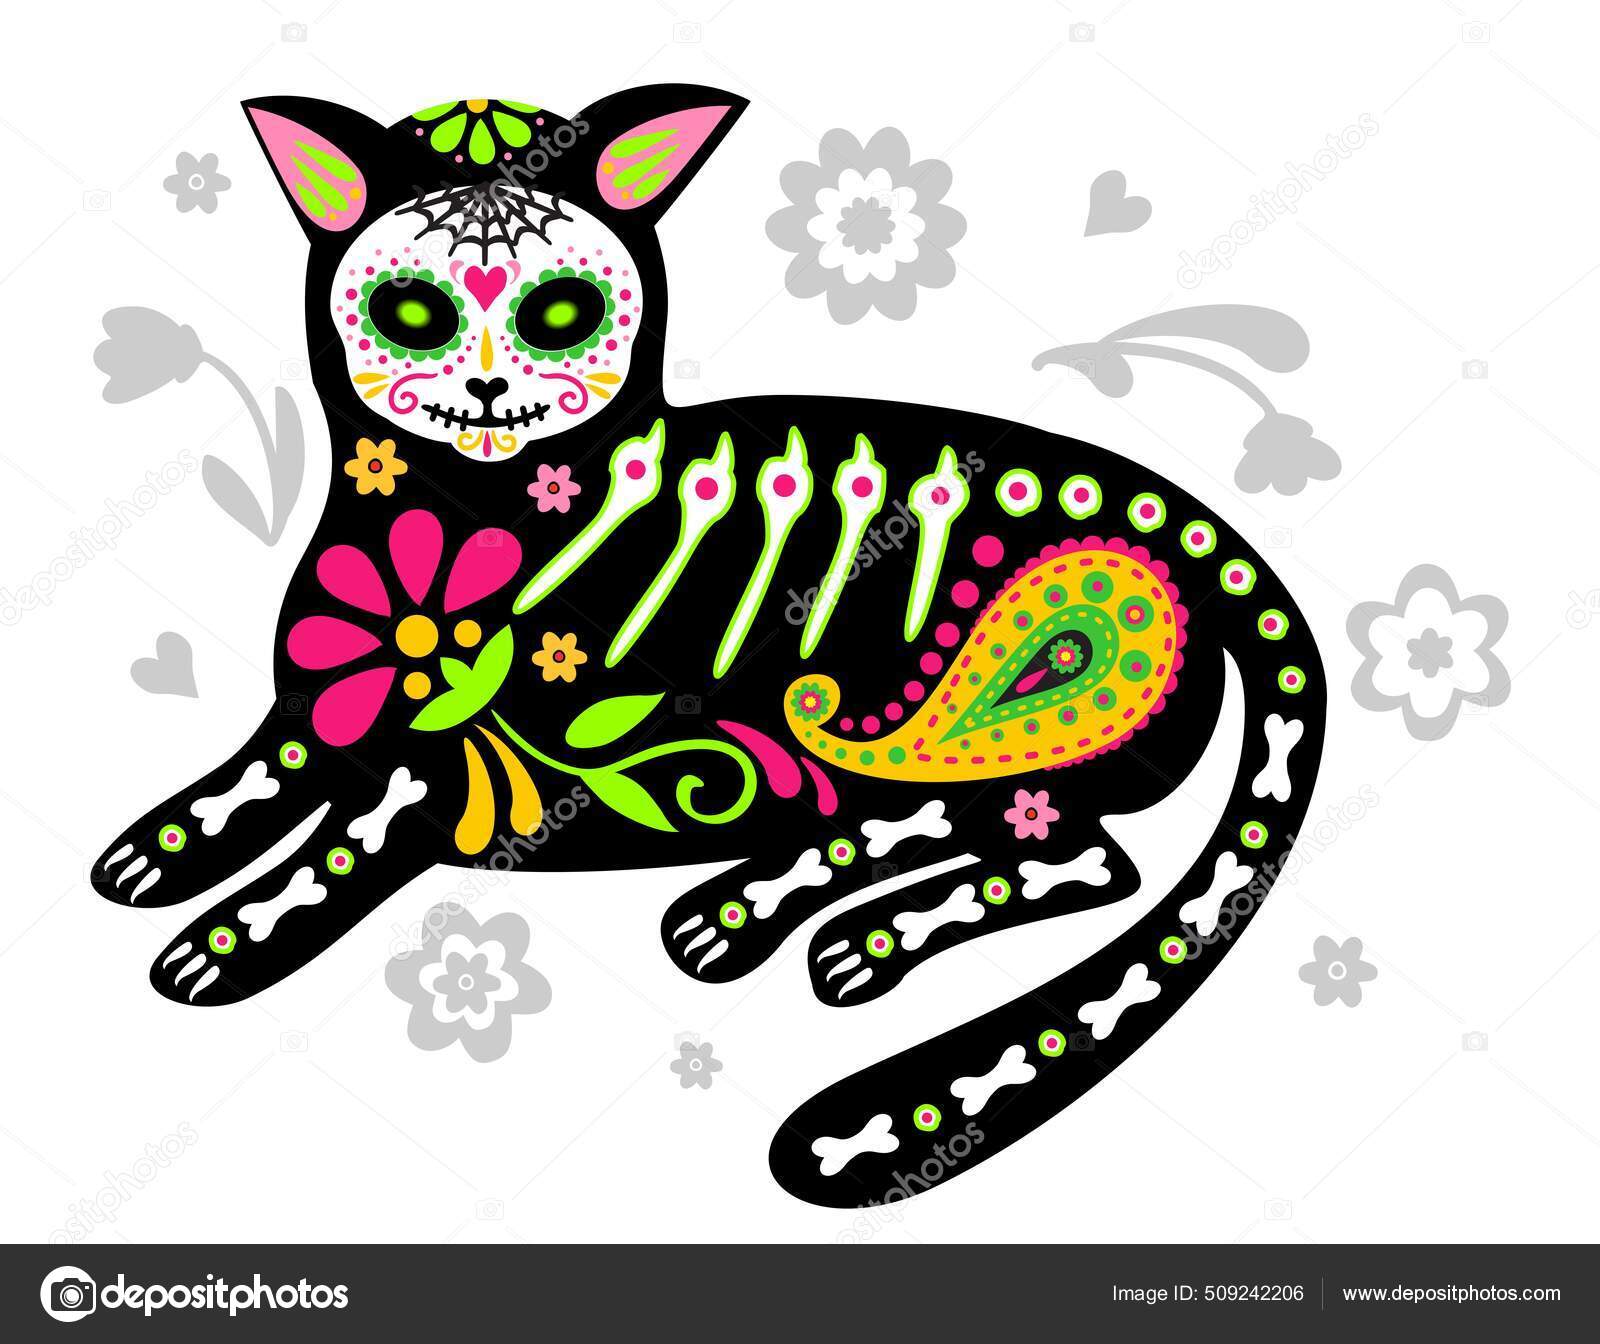 Grußkarte mit Katze, Skelett mit floralen Mustern. Bunte Katzen